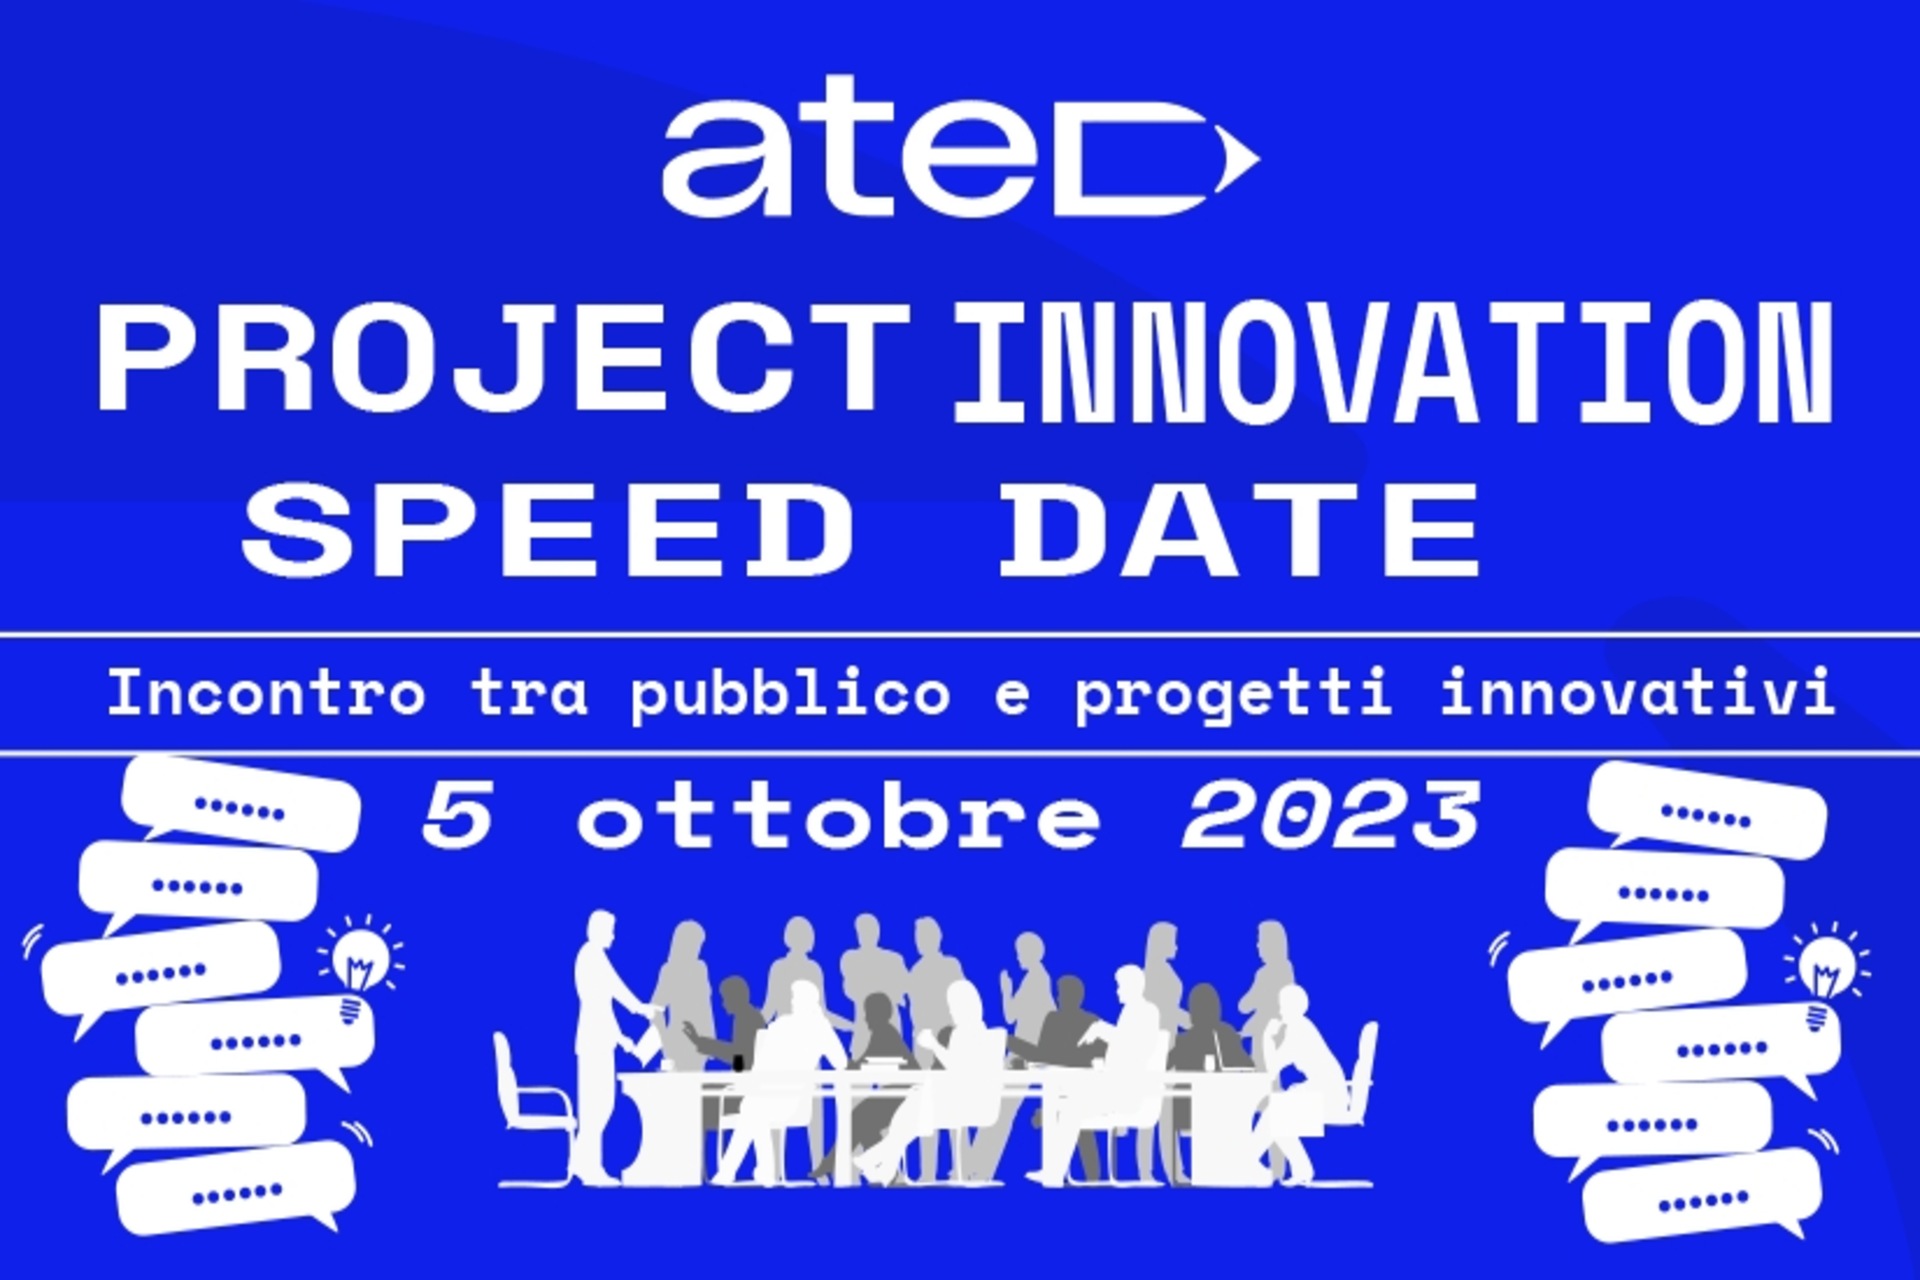 ATED projekta inovāciju ātruma datums: plakāts un galvenais vizuālais materiāls